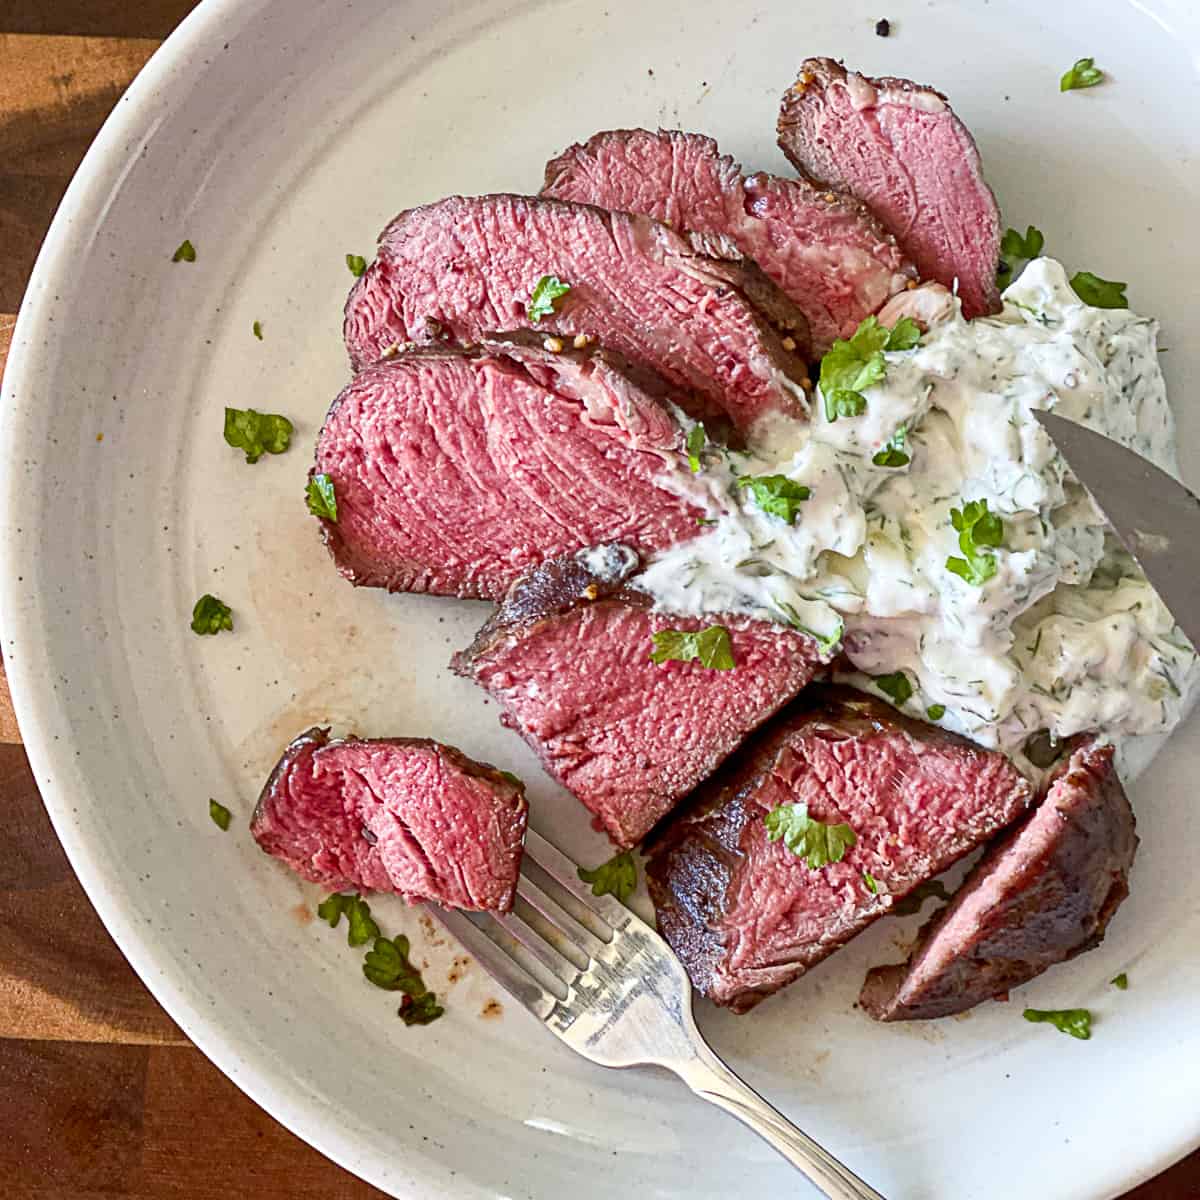 Medium rare, sous vide steak on white plate.